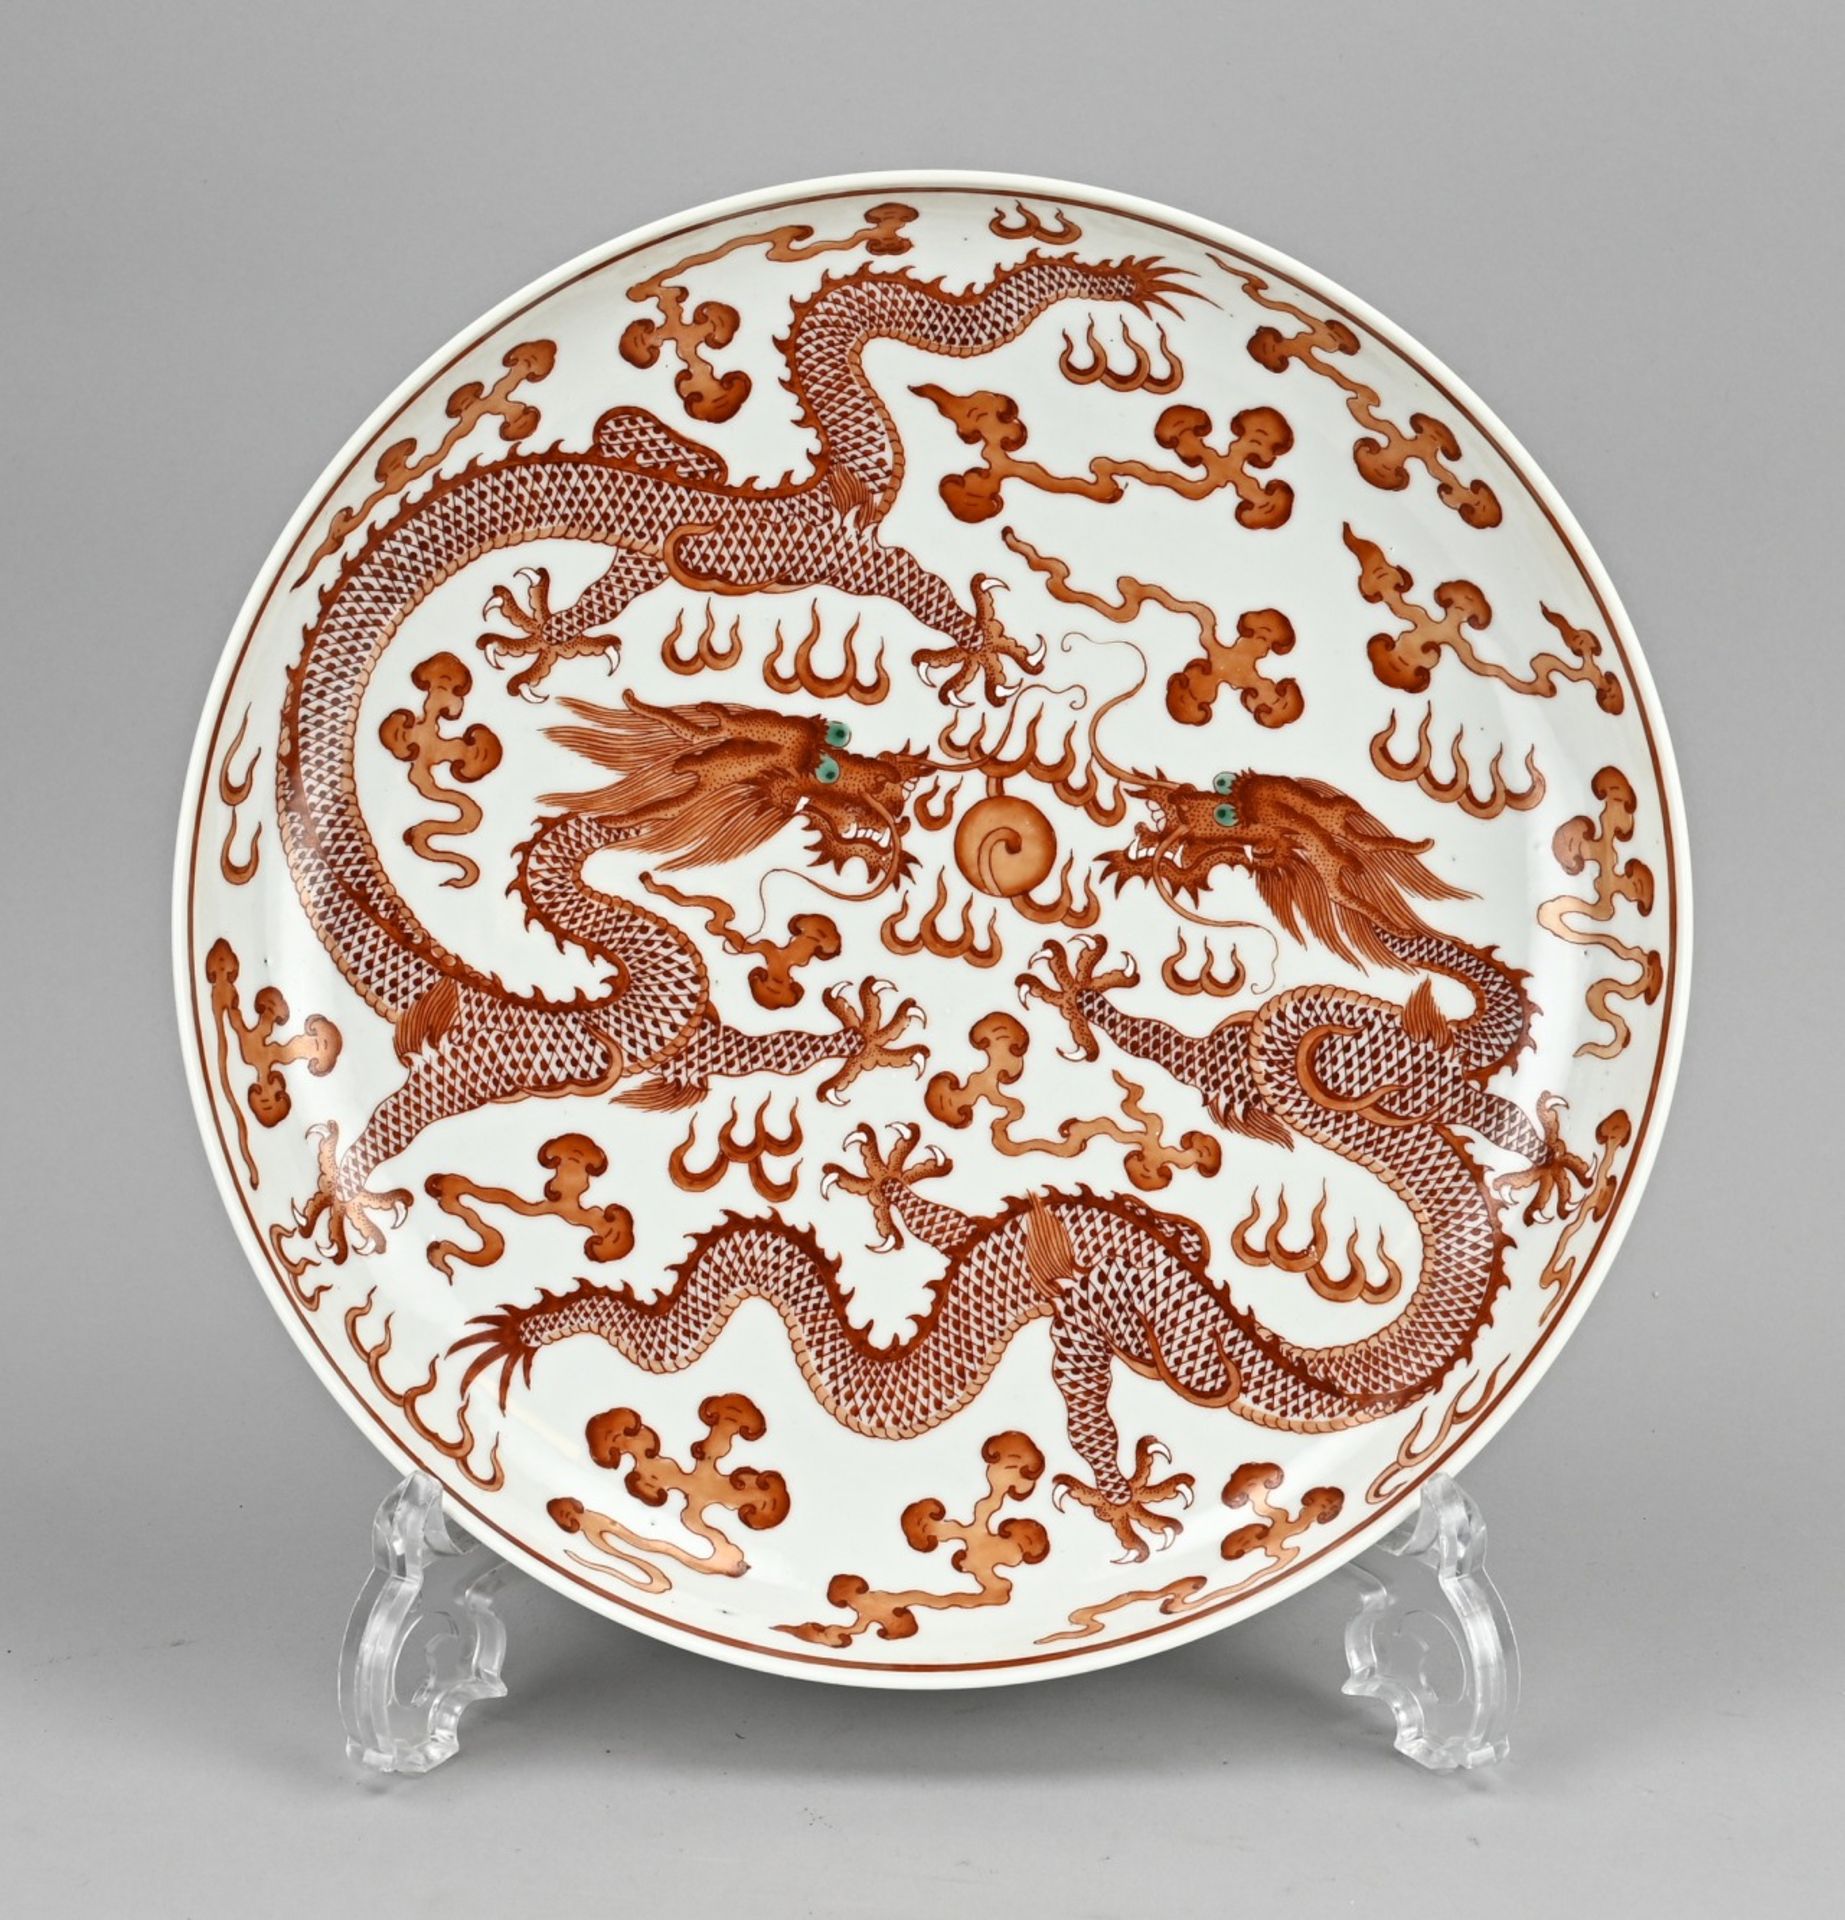 Chinese dragon dish (deep) Ã˜ 25.8 cm.